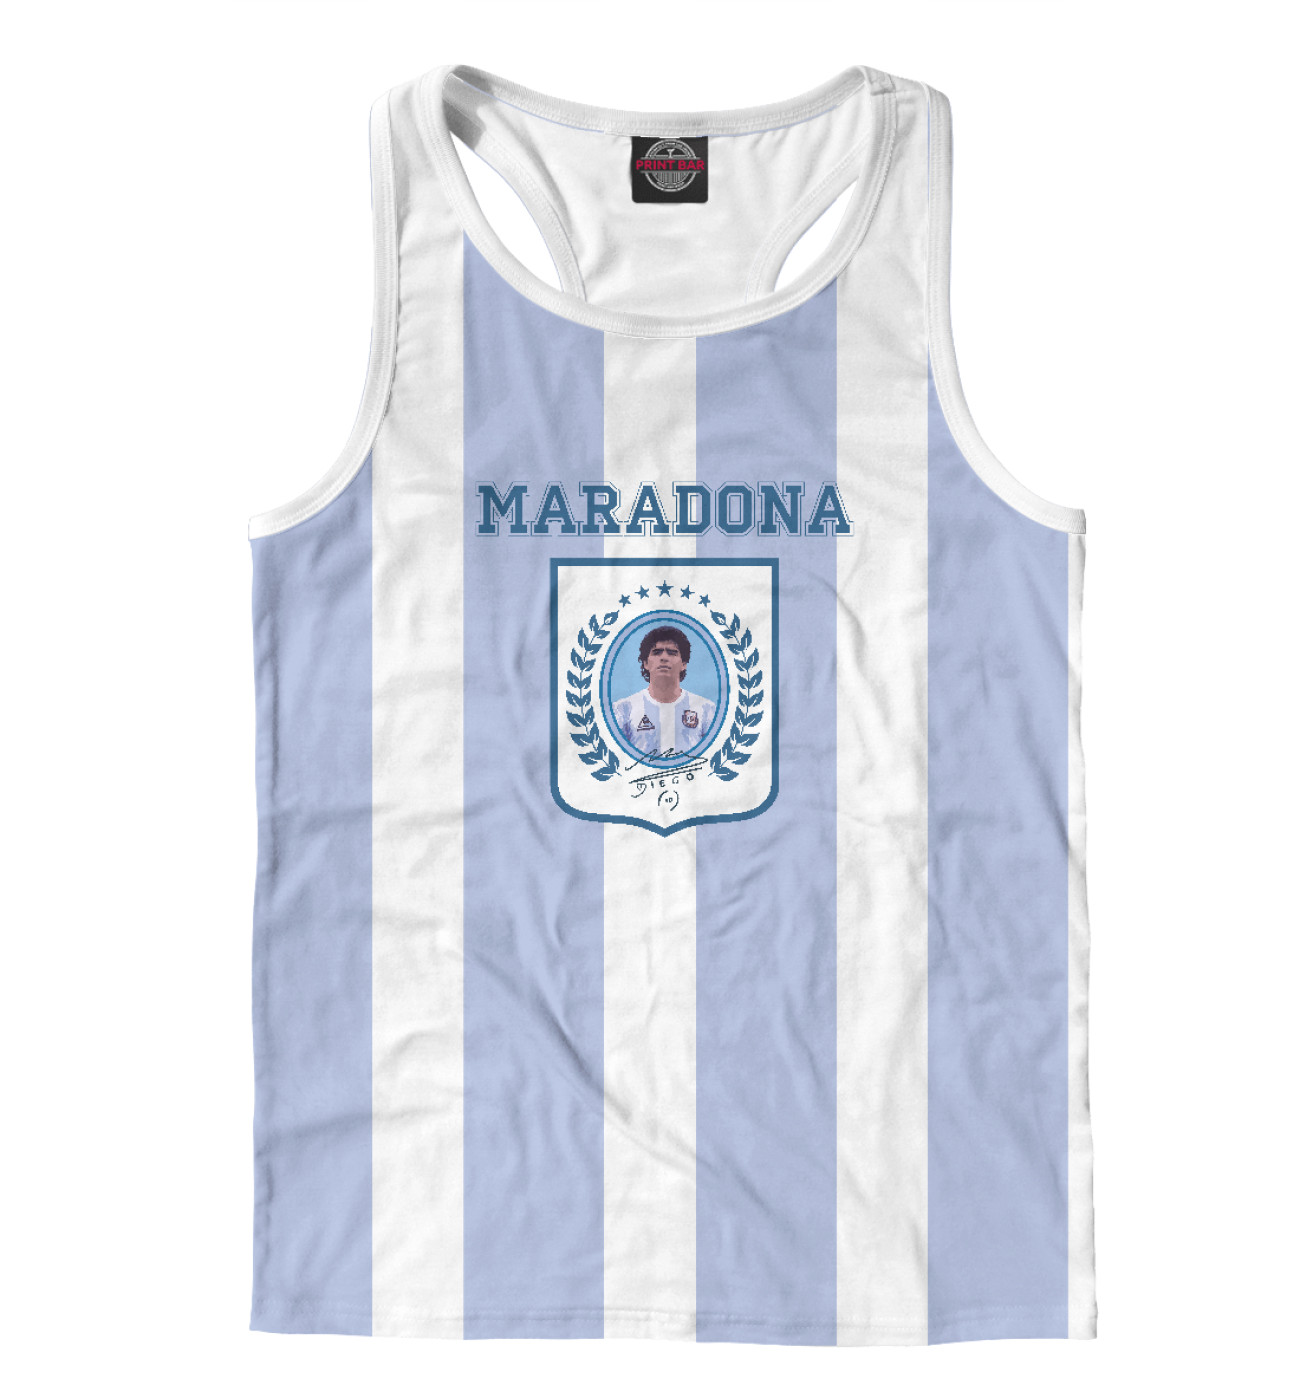 Мужская Борцовка Maradona, артикул: FTO-660229-mayb-2